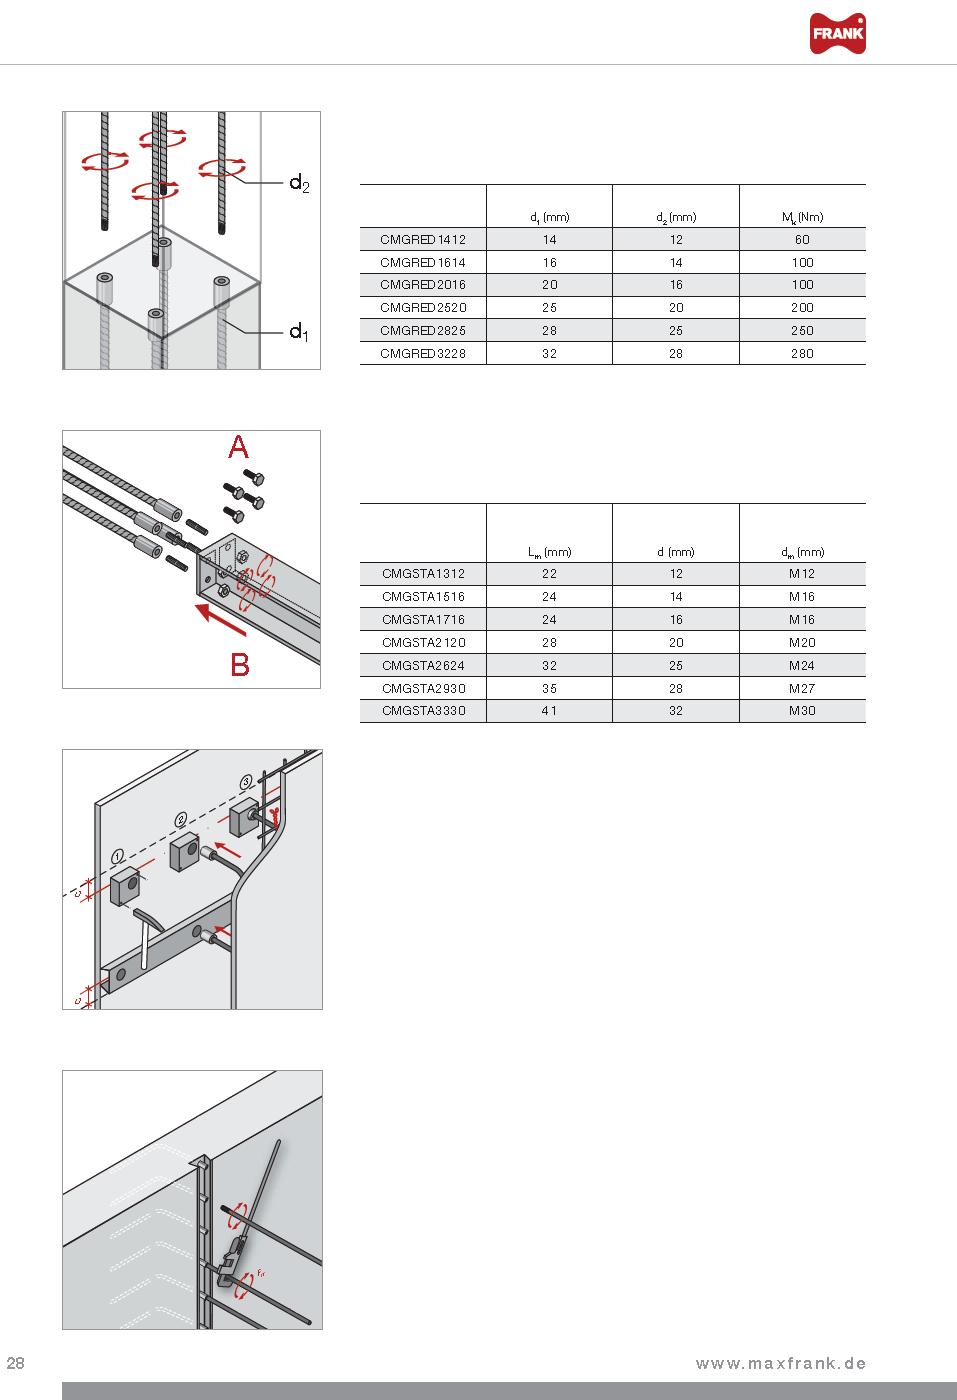 Coupler - Příslušenství Coupler redukované šroubové napojení Pro redukci průměru ocelových prutů v napojení mezi betonovanými záběry, spoj přenášející sílu (Osvěčení/Zulassung Z-1.